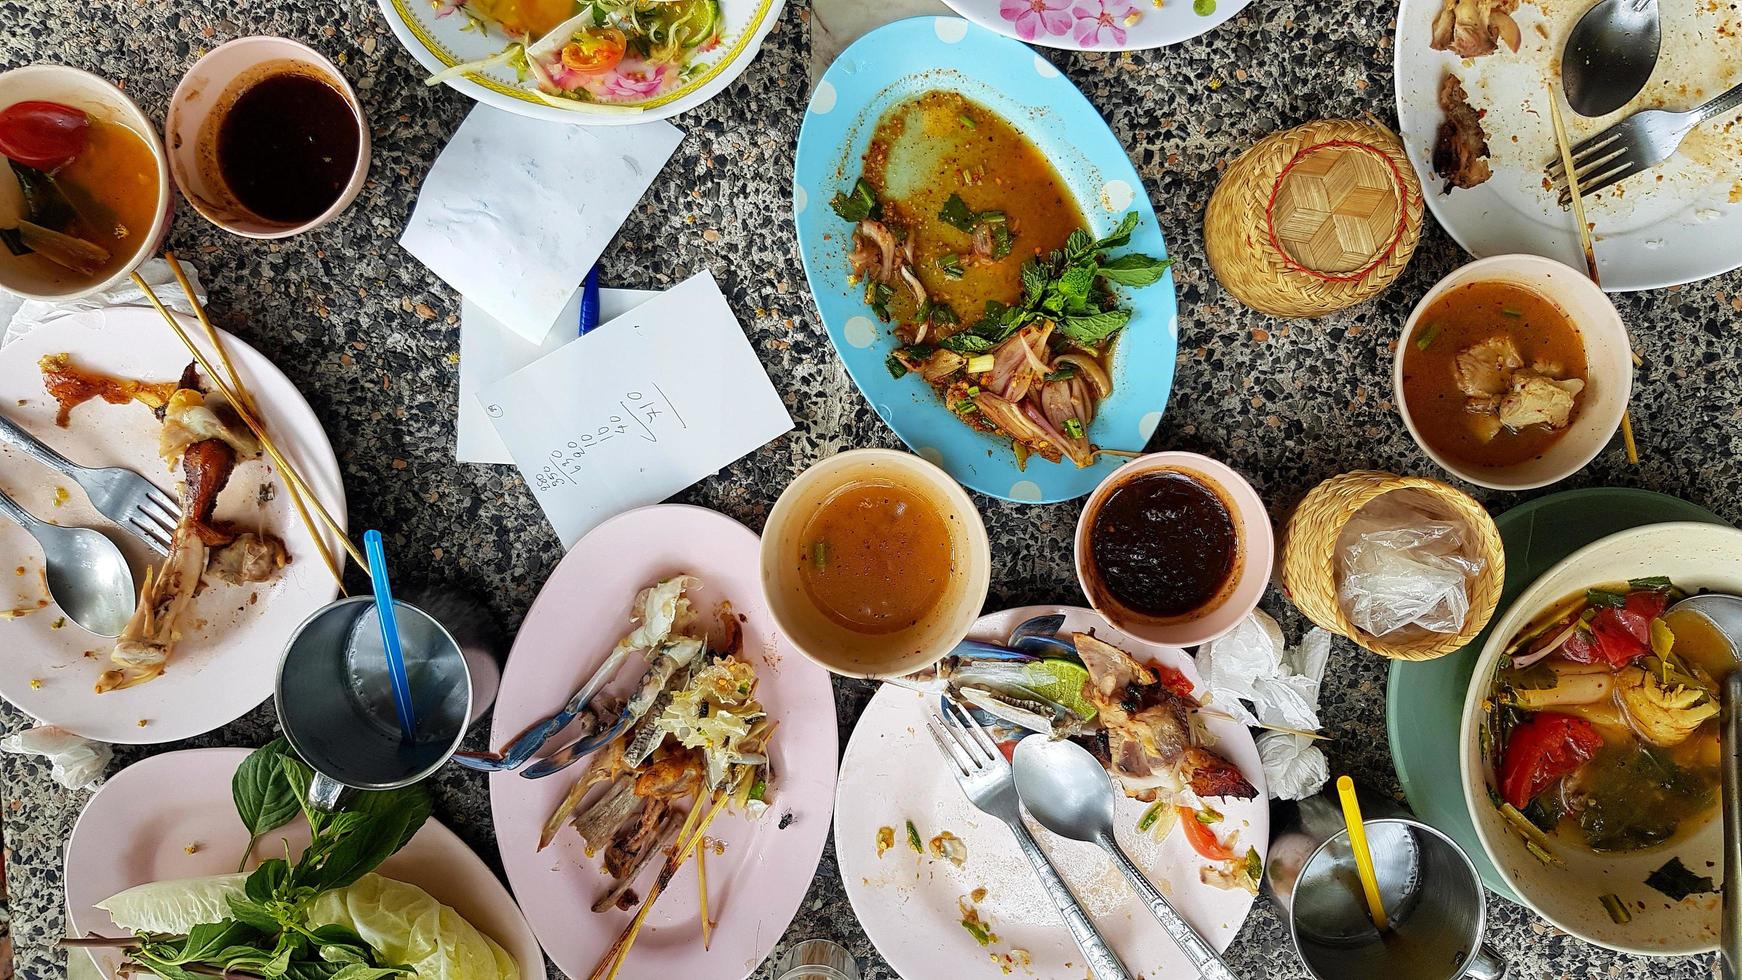 platt lägga av thai mat med kryddad papaya sallad, vit spaghetti, ben kyckling, krabba sallad, sås och färsk tomat förbli på tabell efter äta lunch på restaurang. mat avfall begrepp. foto